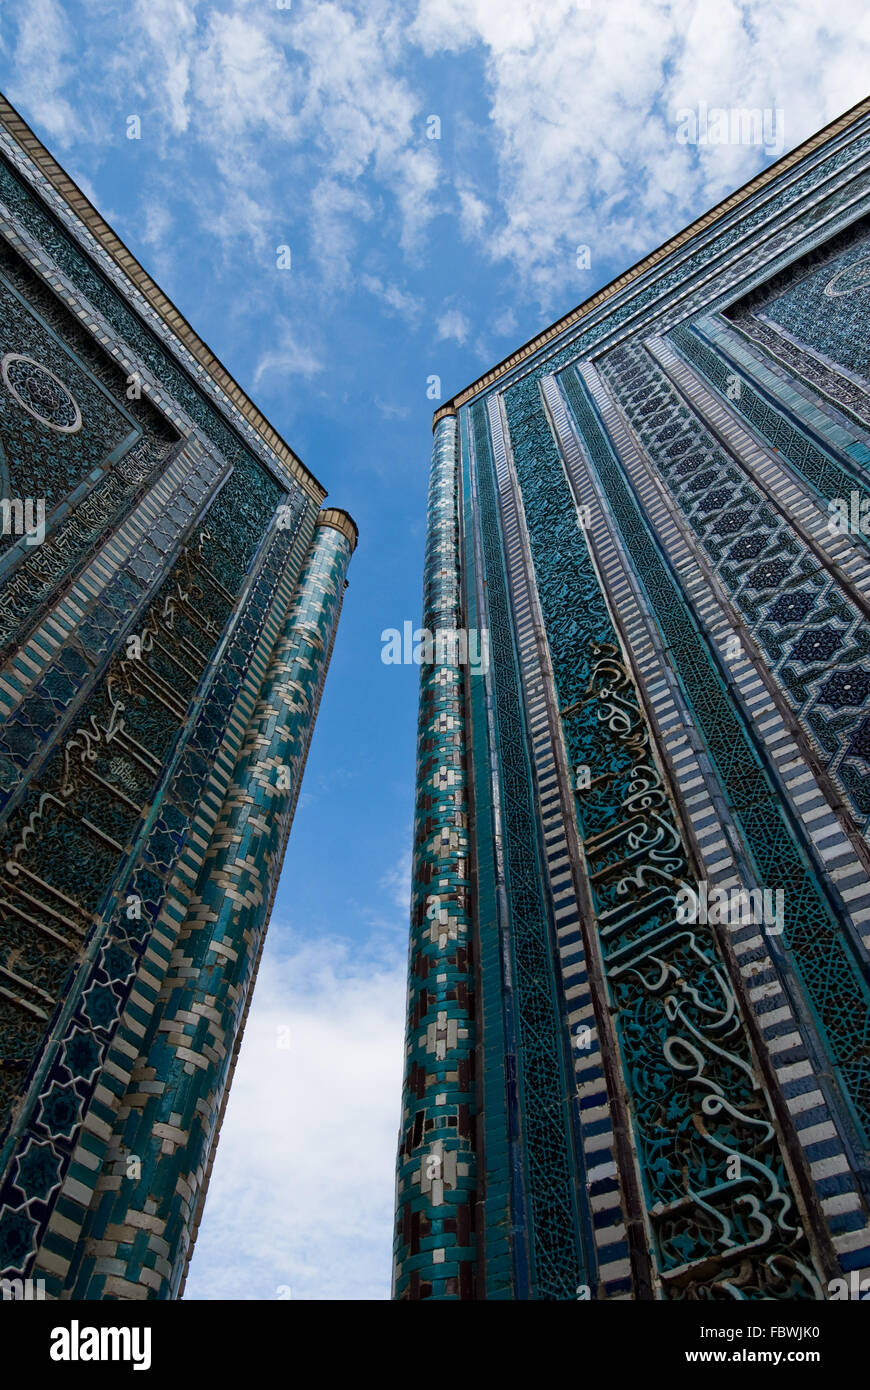 Blue tiled facades of Shahi-Zinda Necropolis, Samarkand, Uzbekis Stock Photo